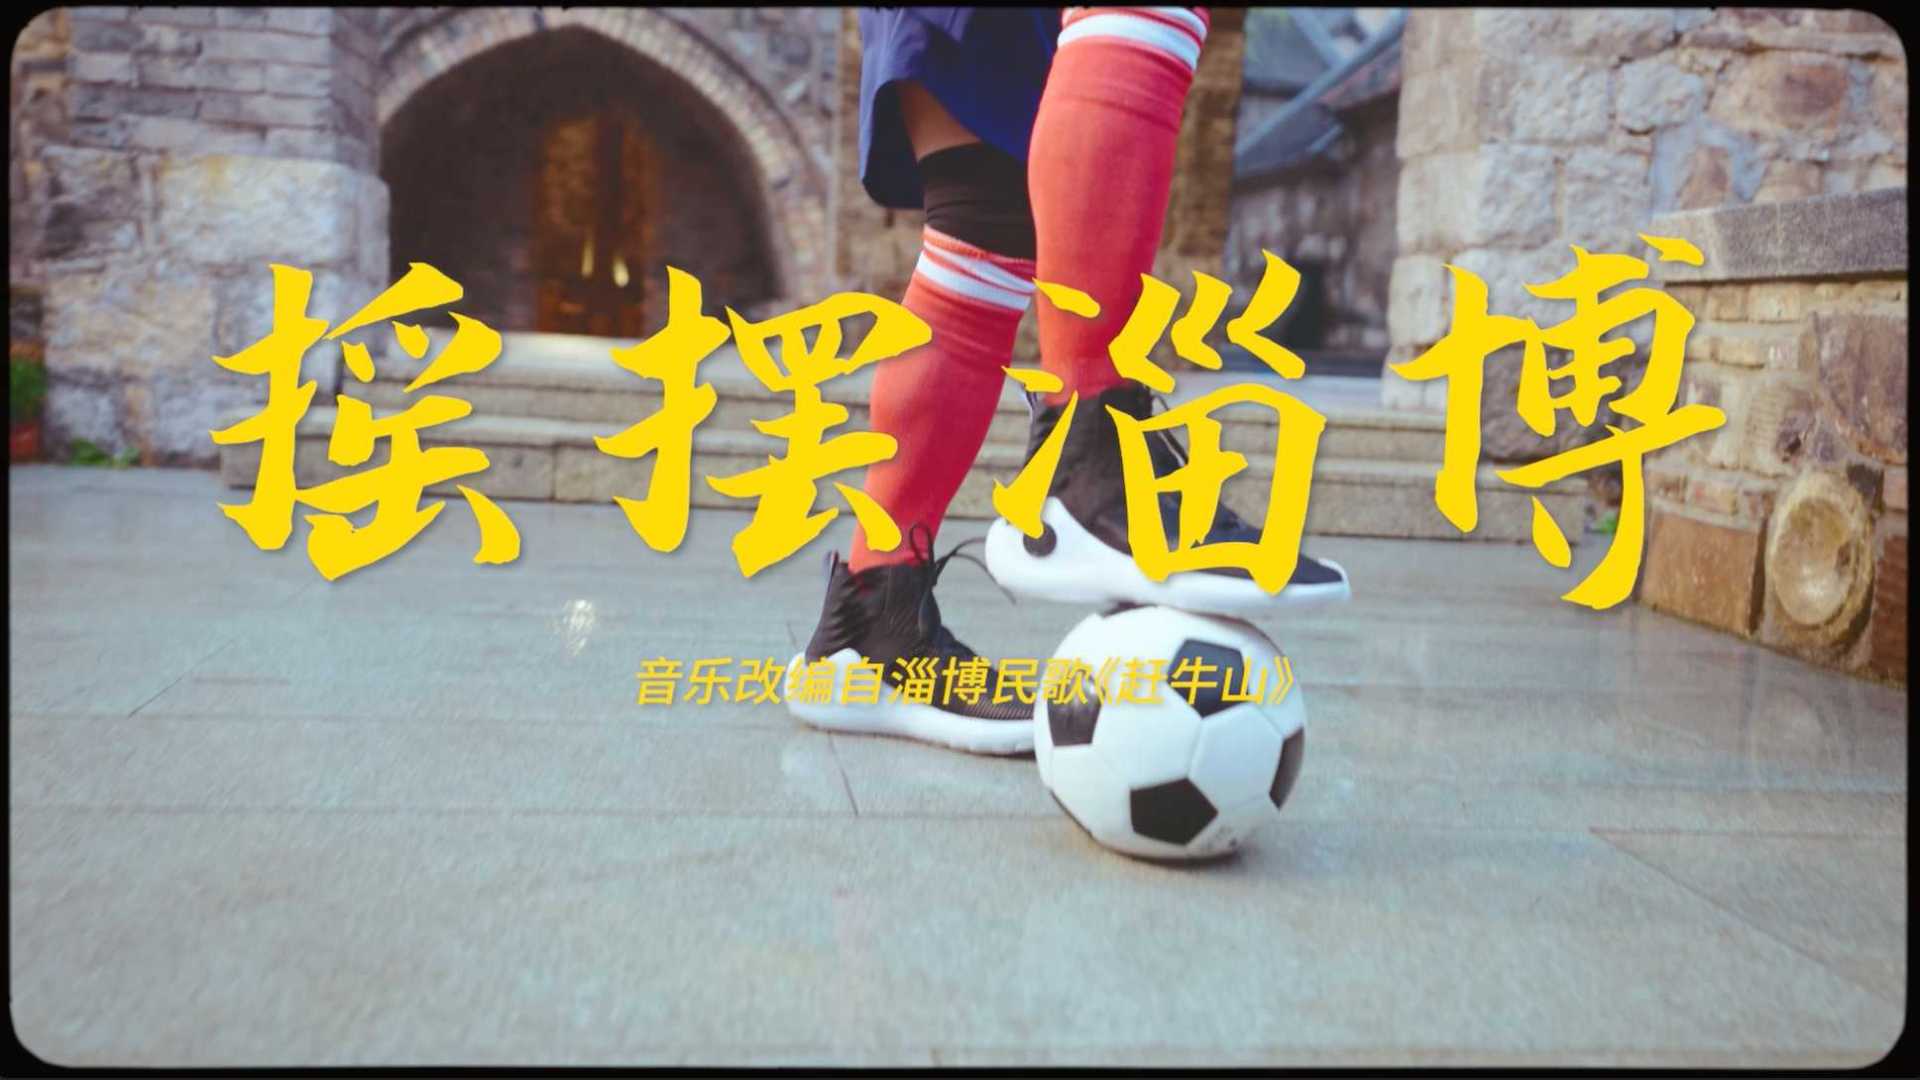 「快手磁力引擎x淄博文旅」| 世界杯与蹴鞠故乡碰撞出的淄博摇摆客